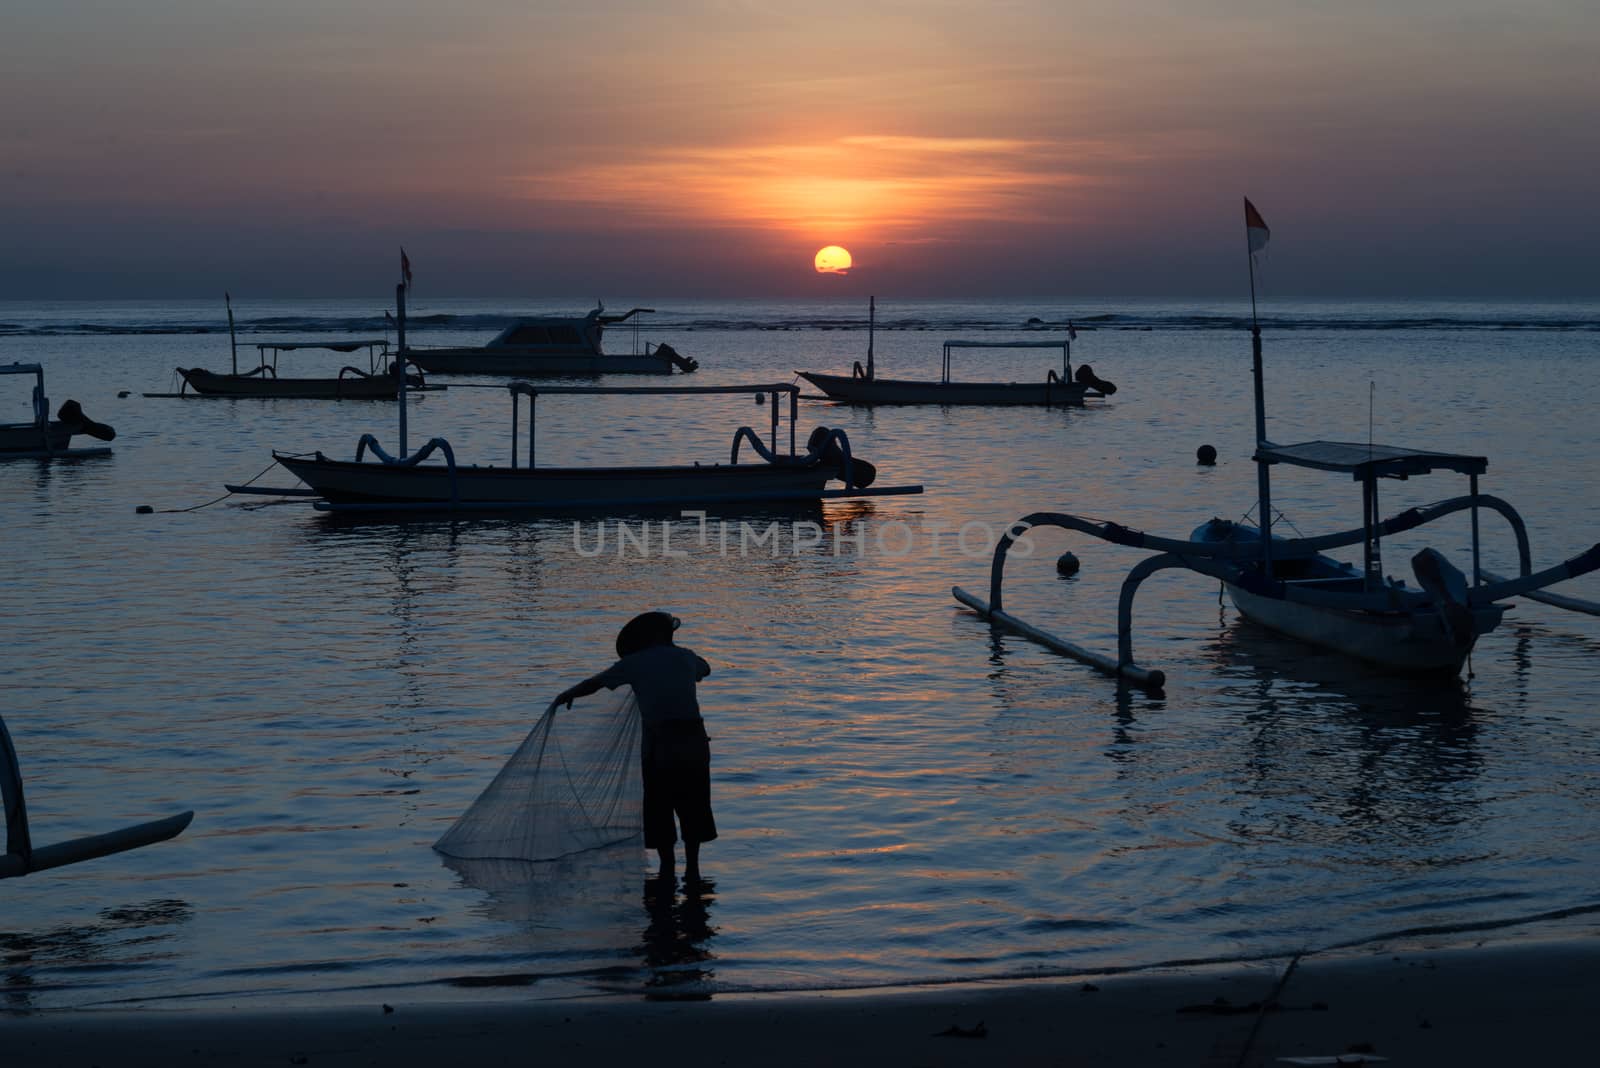 Sunrise in Sanur, Bali by pomemick